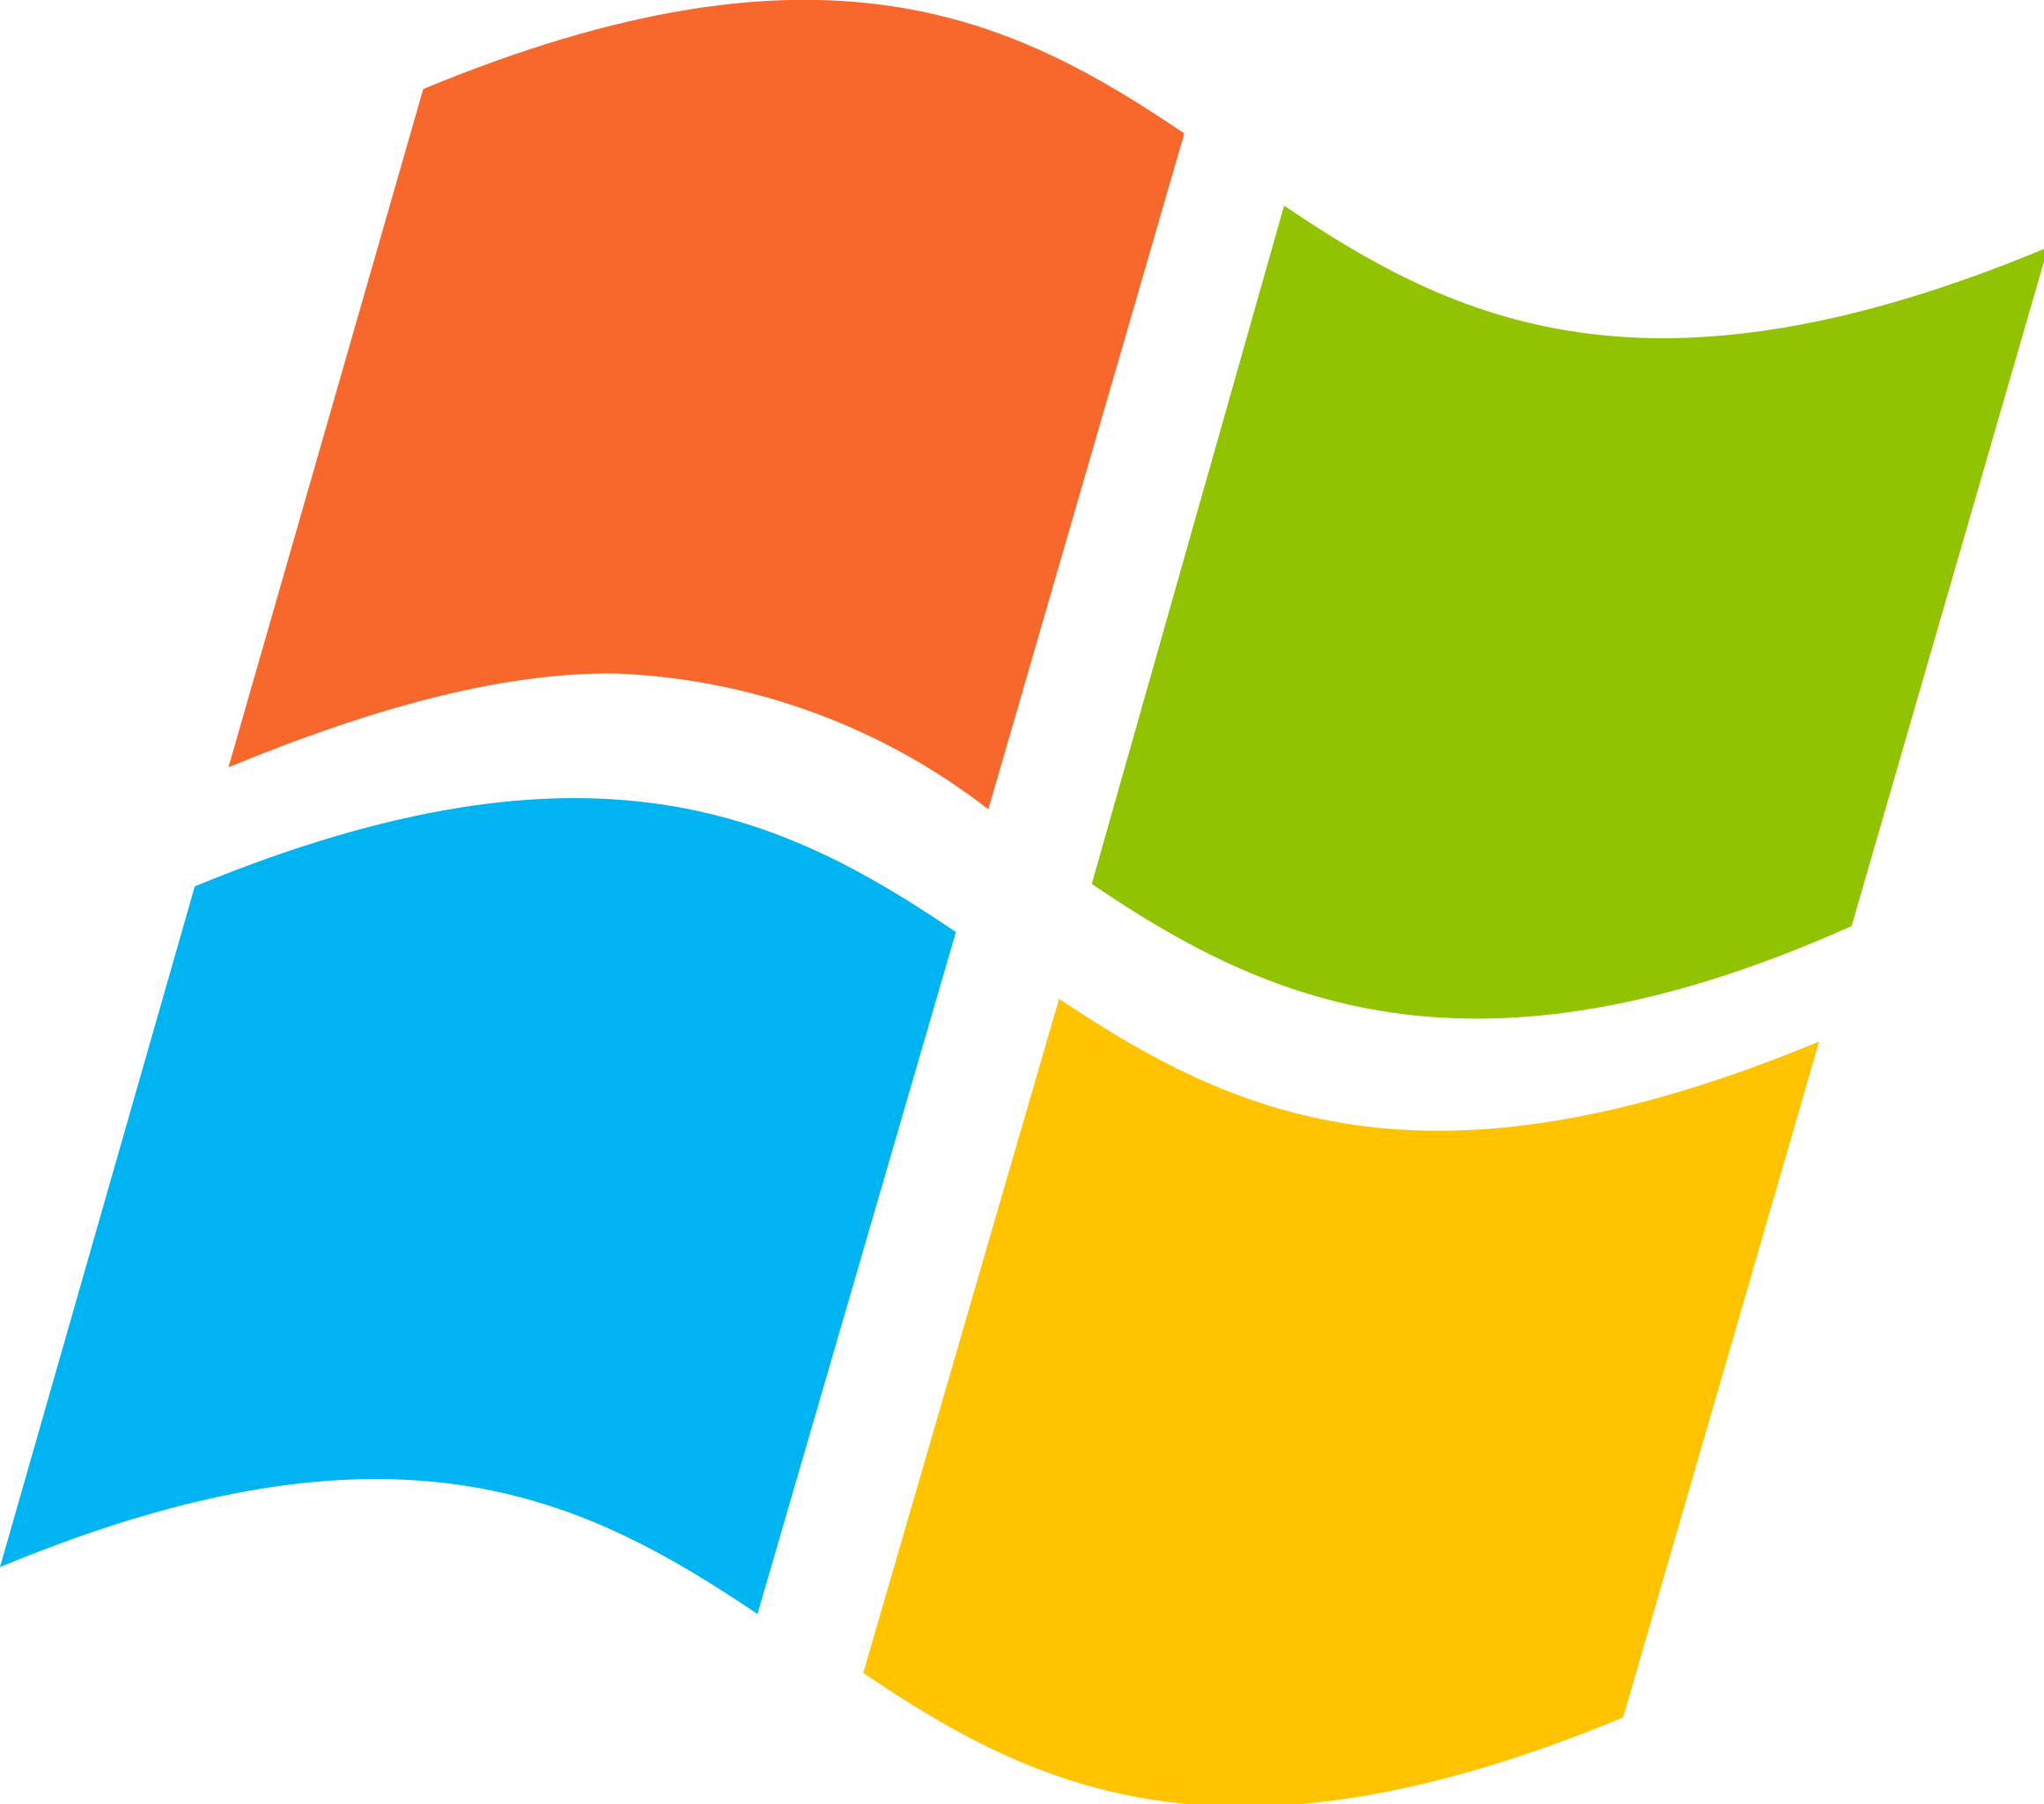 A Windows logo.